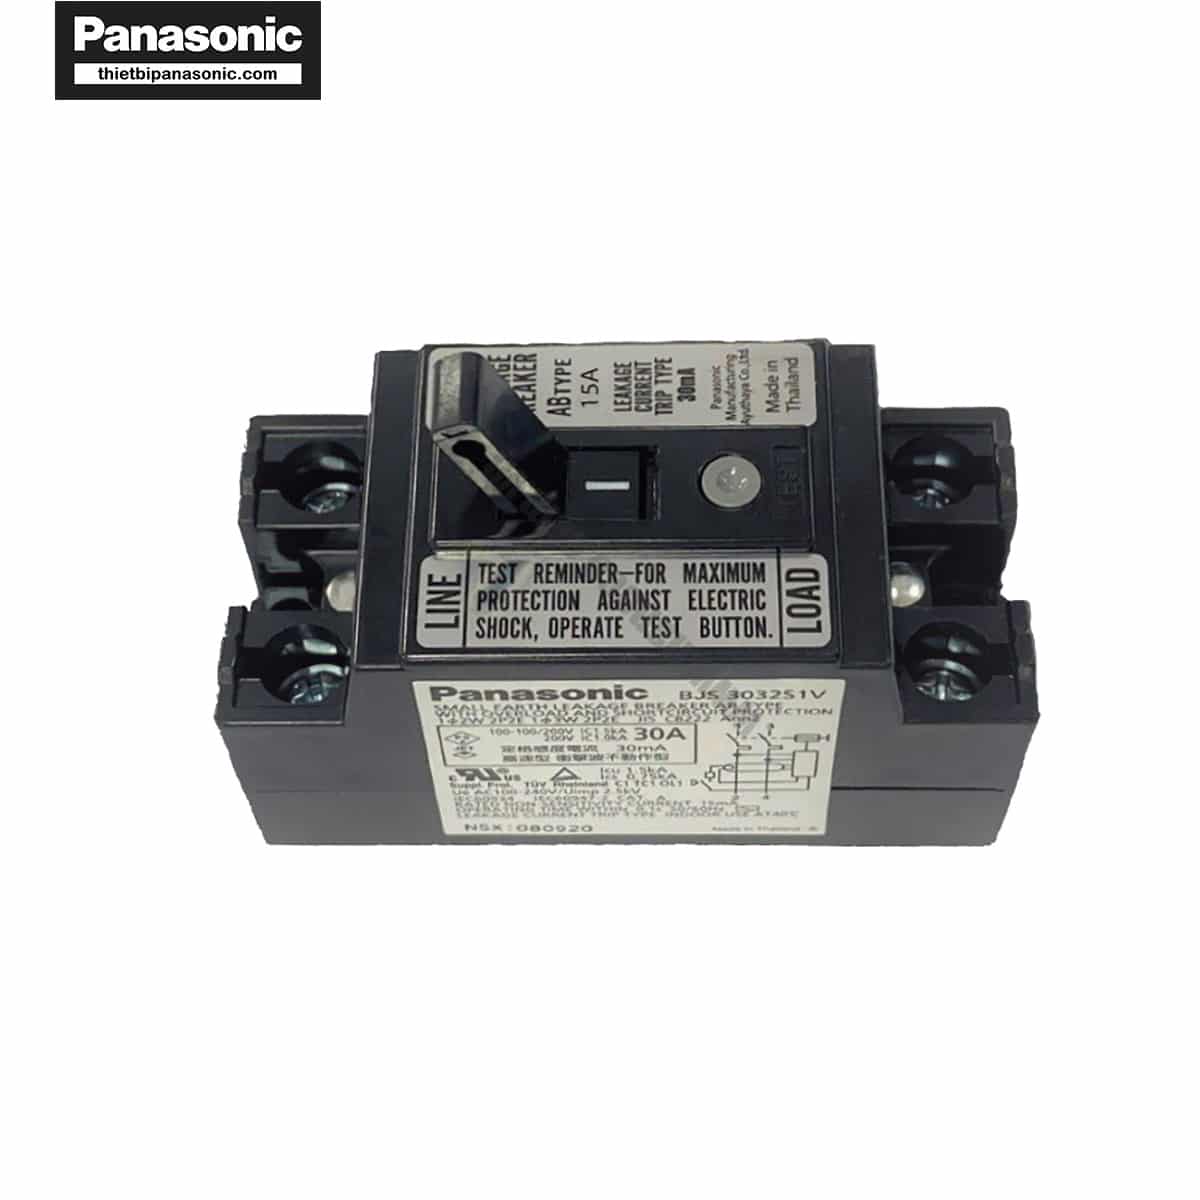 ELB Panasonic BJS1532S1V 15A 1.5kA 30mA giúp bảo vệ quá tải, ngắn mạch và chống rò hiệu quả